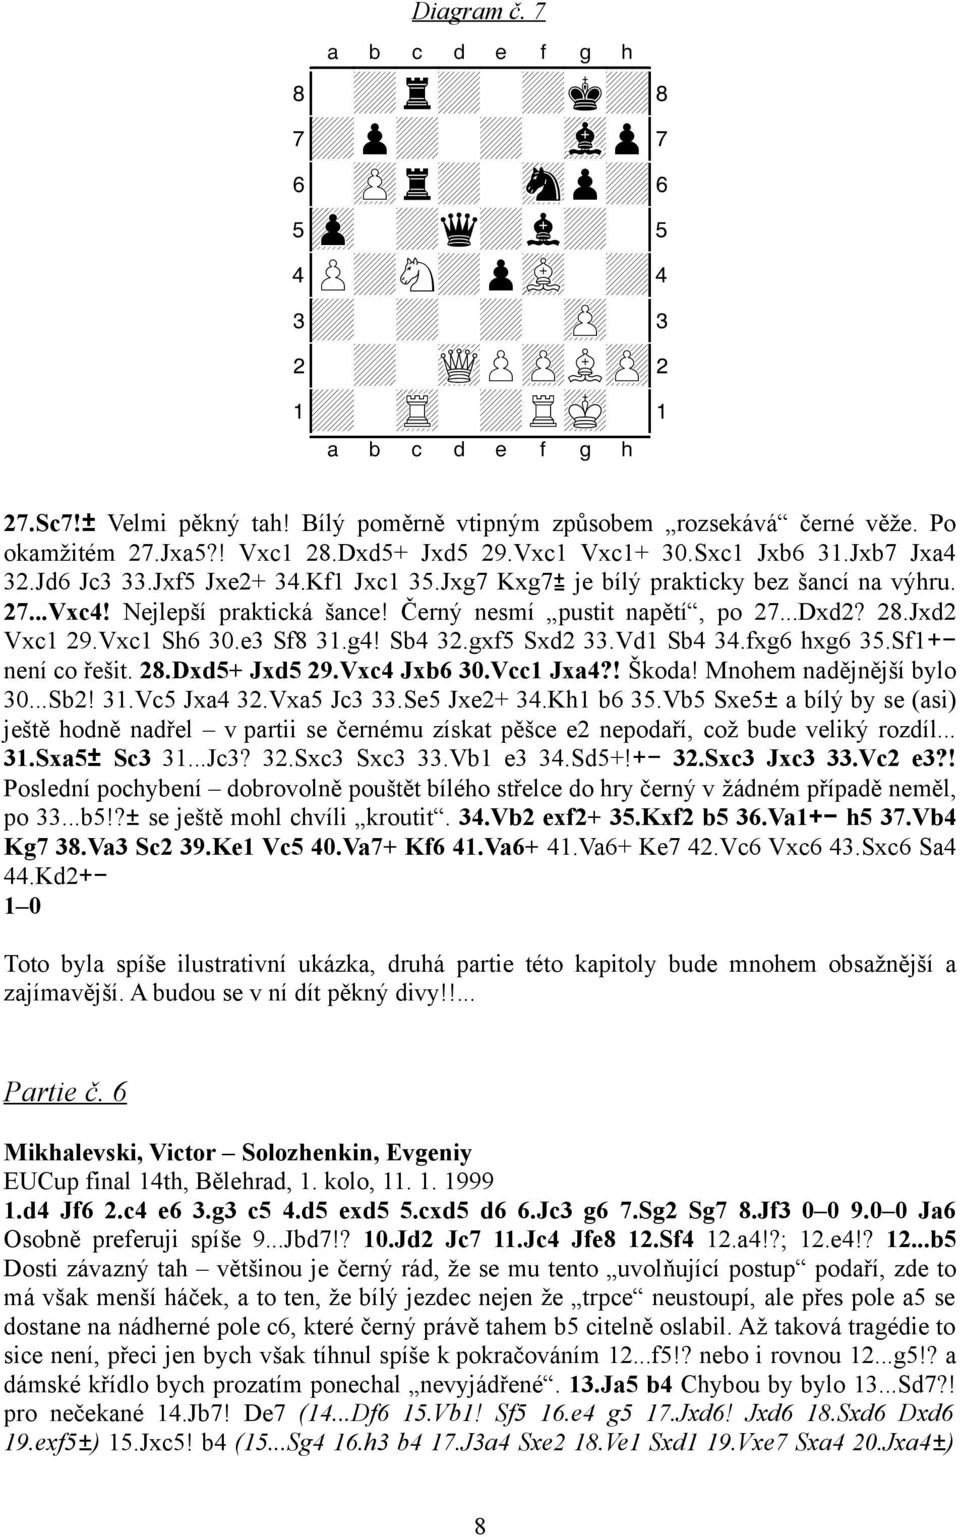 Nejlepší praktická šance! Černý nesmí pustit napětí, po 27...Dxd2? 28.Jxd2 Vxc1 29.Vxc1 Sh6 30.e3 Sf8 31.g4! Sb4 32.gxf5 Sxd2 33.Vd1 Sb4 34.fxg6 hxg6 35.Sf1+není co řešit. 28.Dxd5+ Jxd5 29.